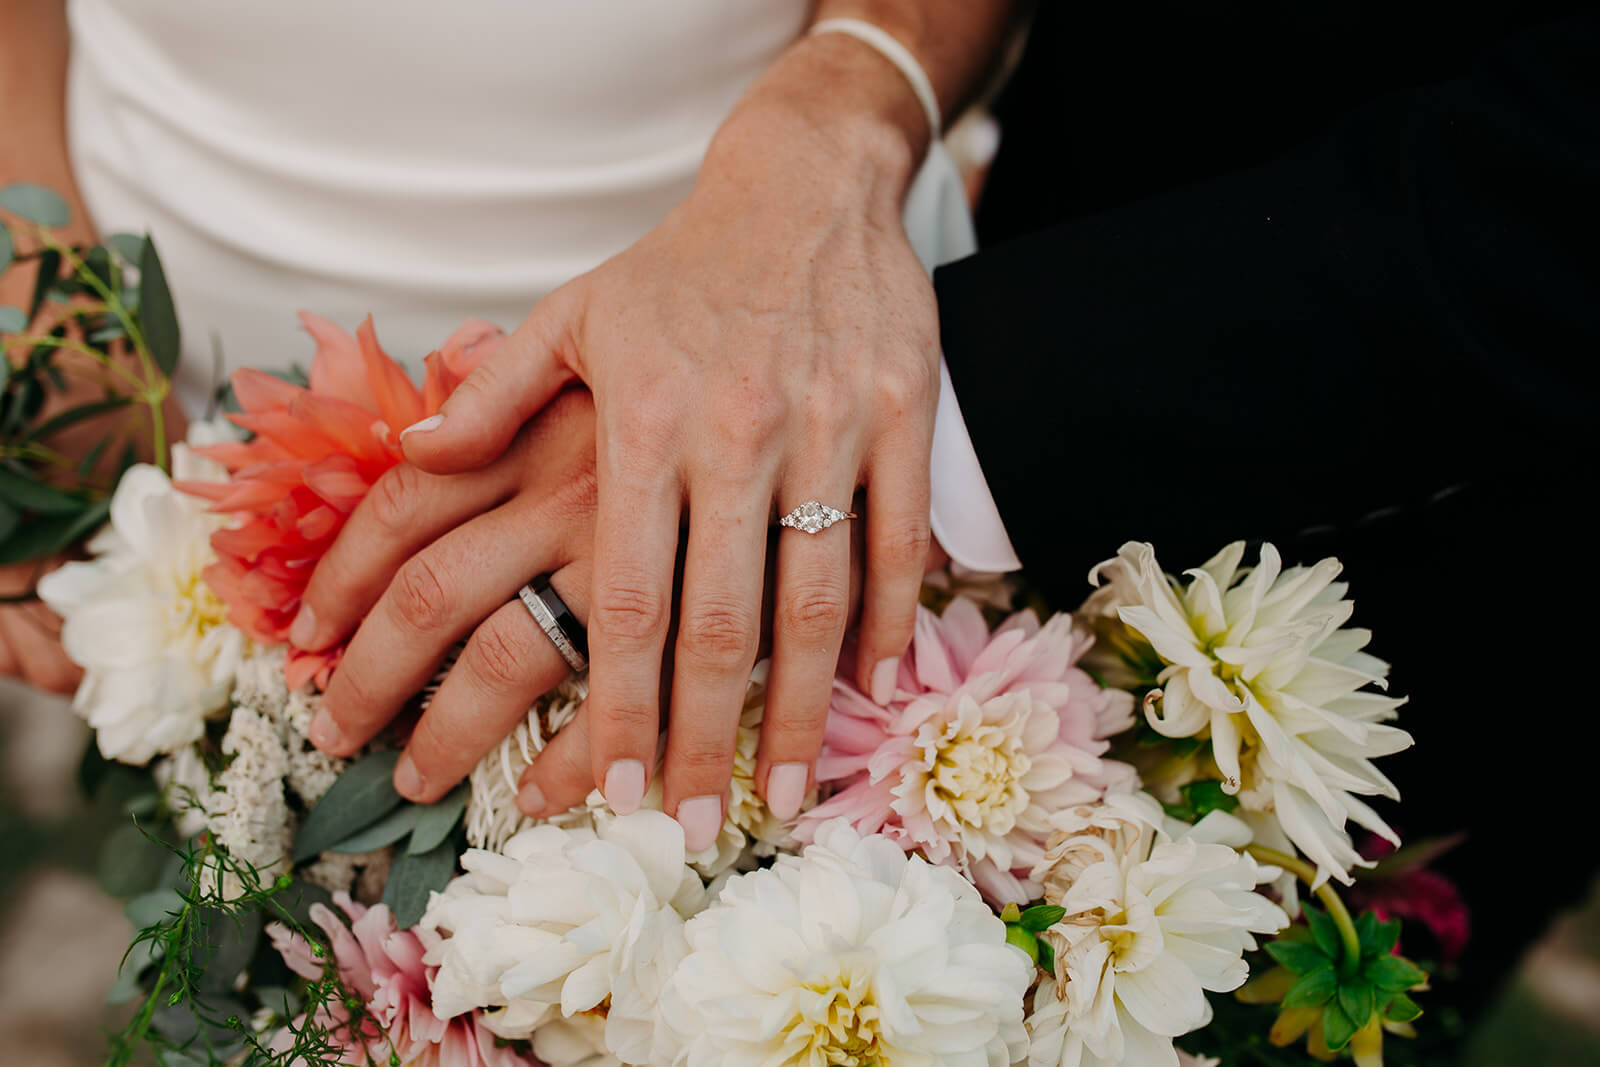 Bride and groom rings resting on top of DIY wedding flowers